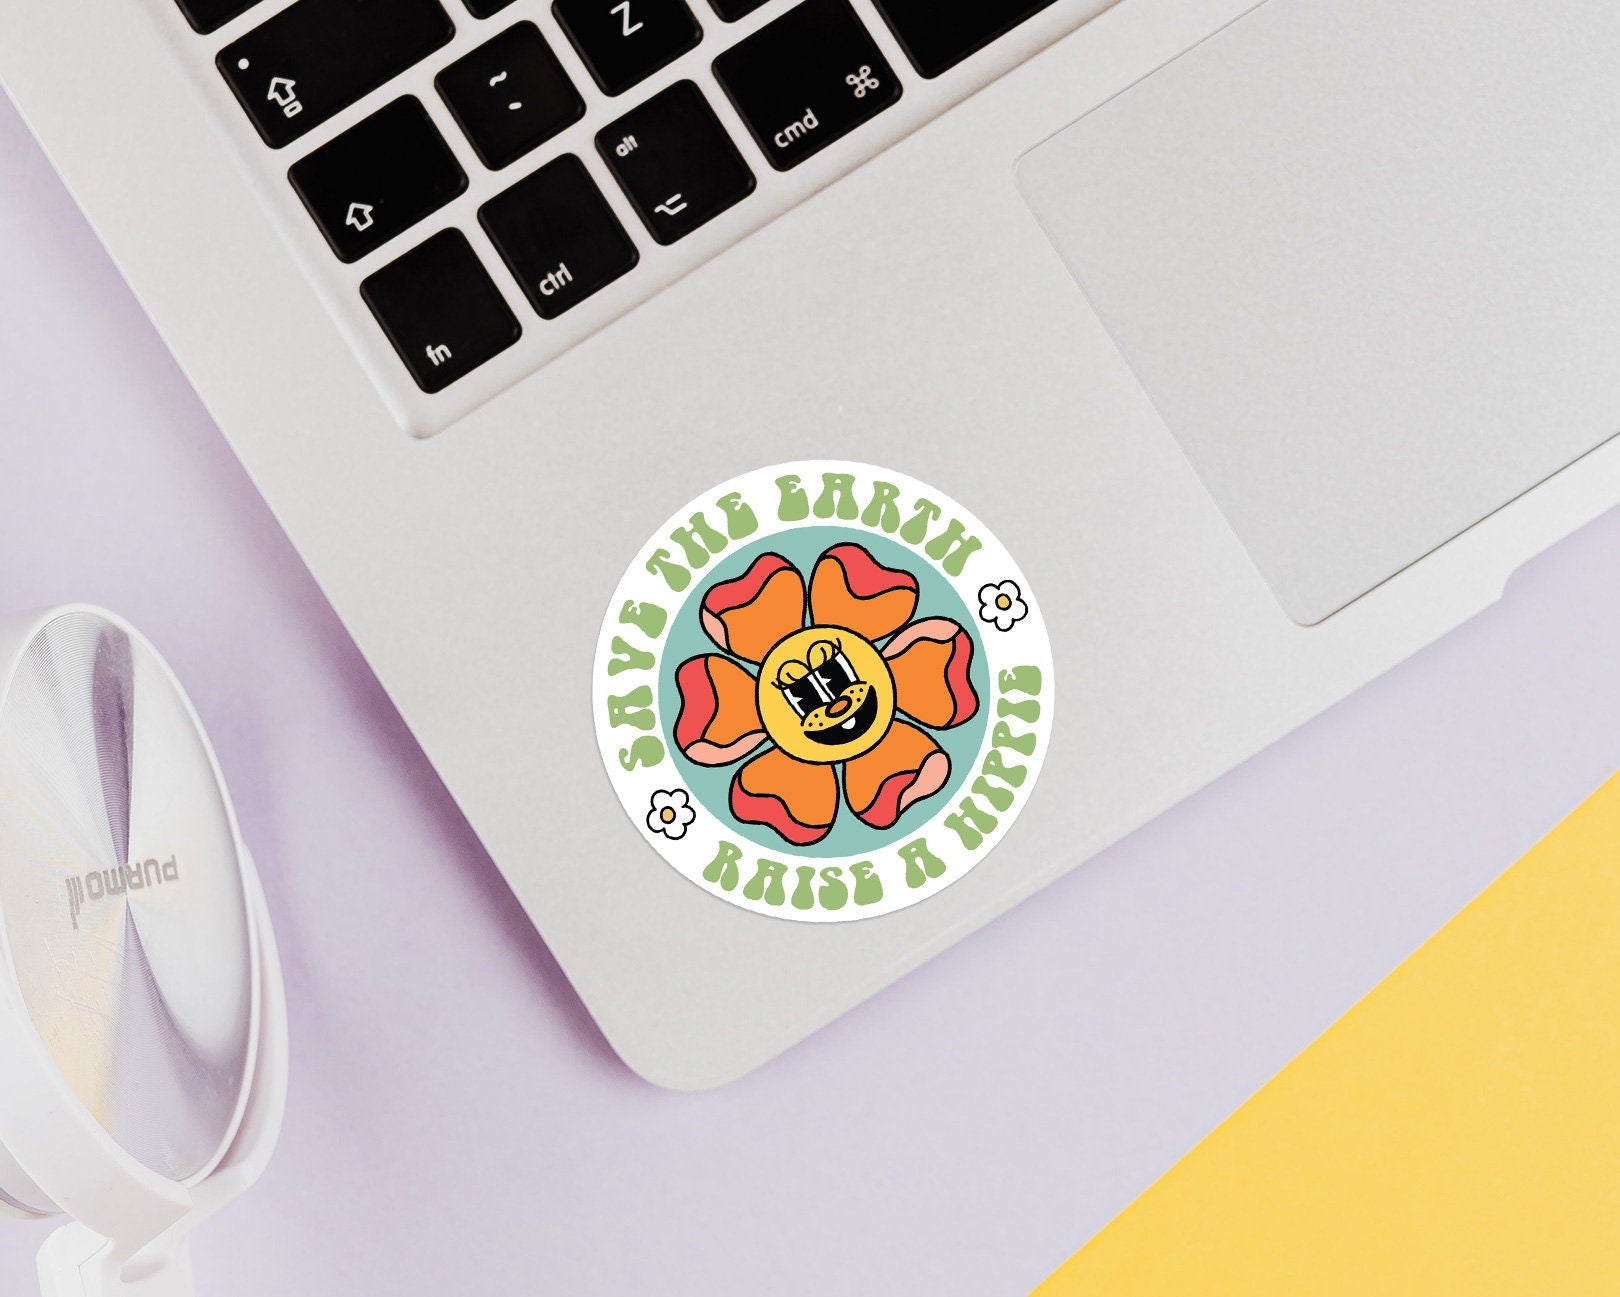 Hippie Flower Sticker - shopartivo